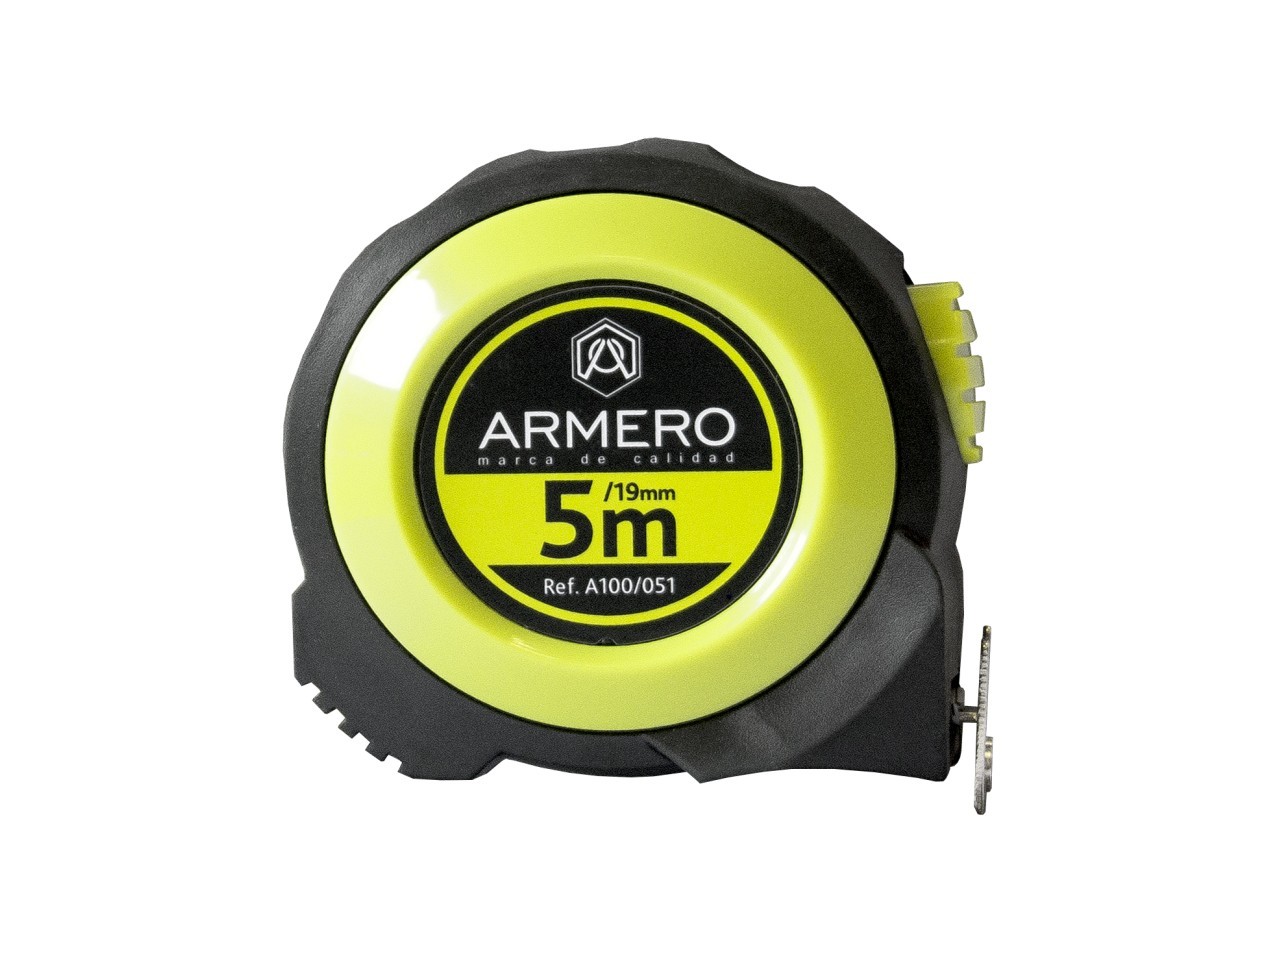 Купить рулетку 1 м. Рулетка Armero a100/031. Рулетка Armero, 5 м. Armero лента измерительная 100 м. Рулетка Armero, 3 мх16 мм.